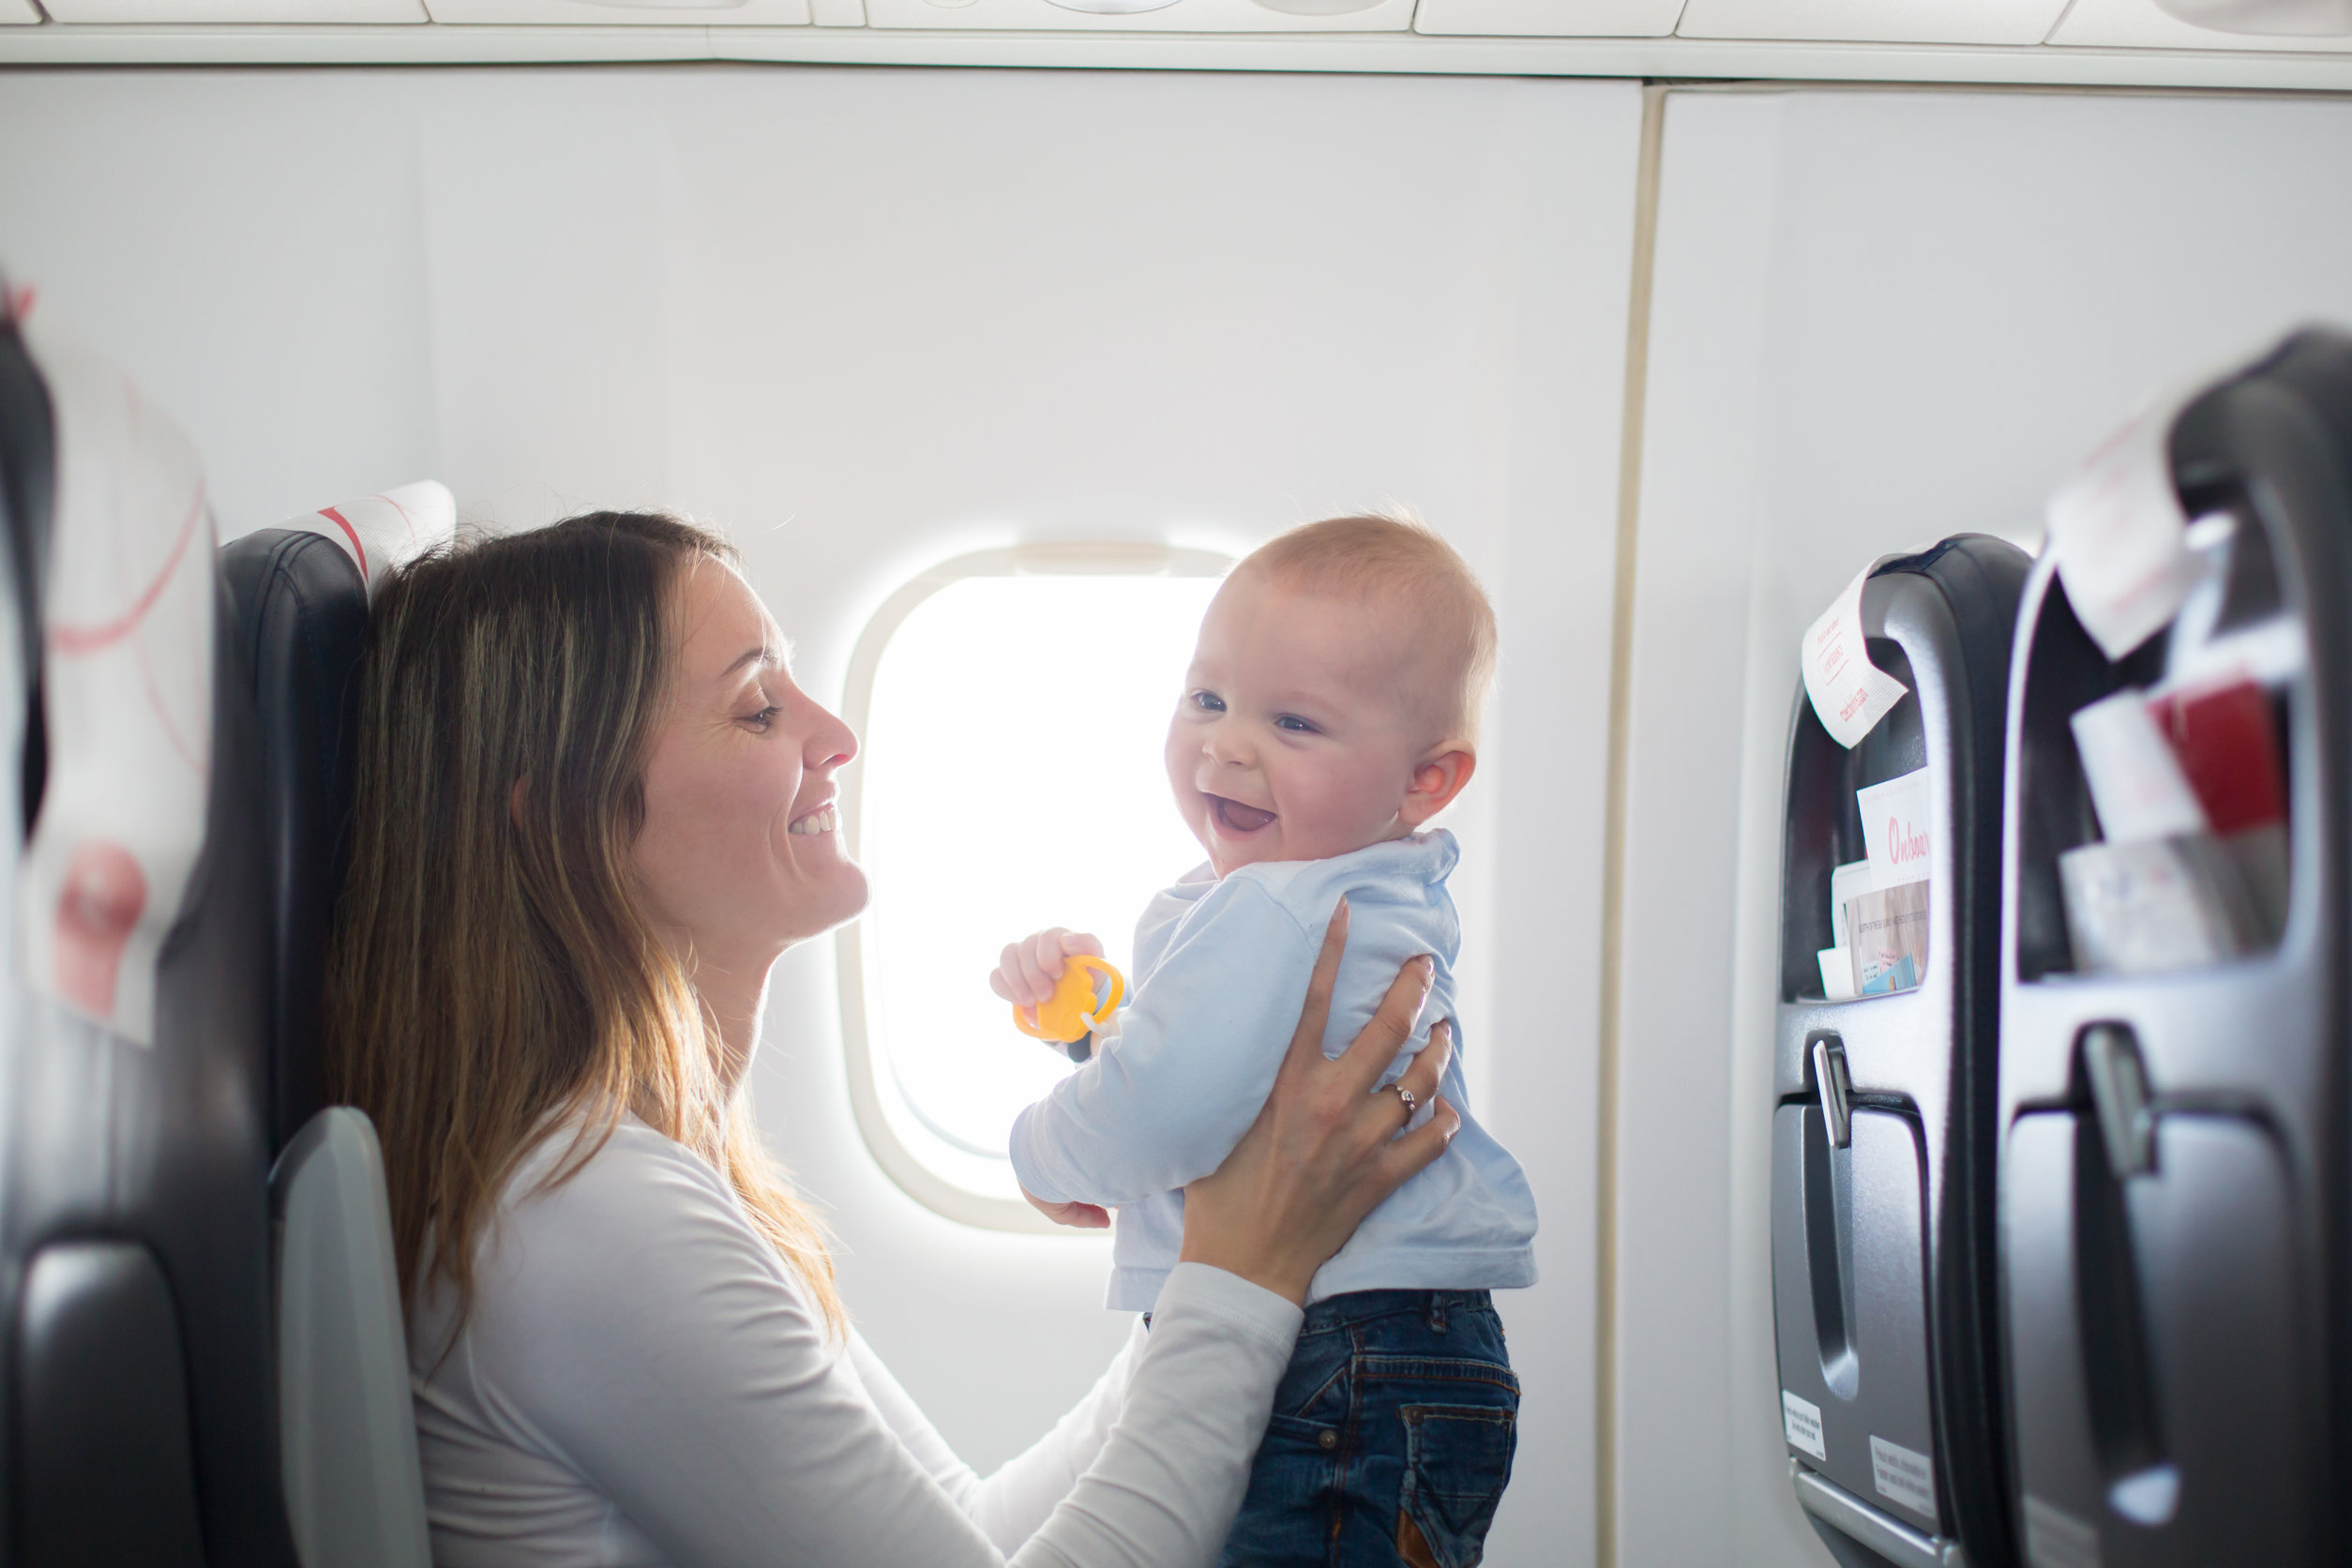 Vliegen met een baby, inpaklijst welke bagage neem je mee als handbagage of koffer? - Mamaliefde.nl